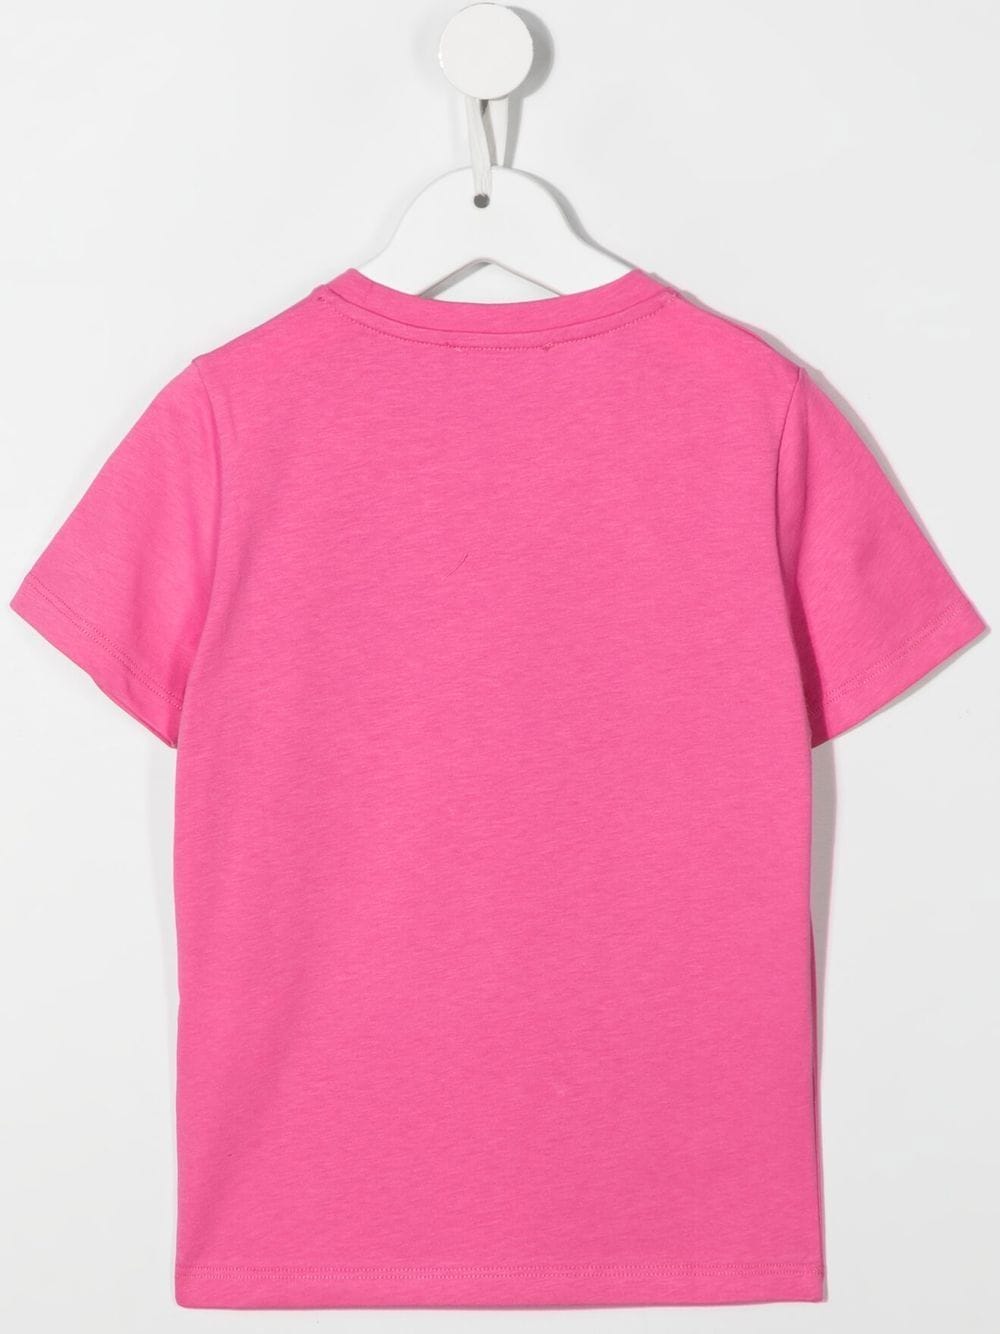 Versace Kids Pink I Love Versace T-shirt